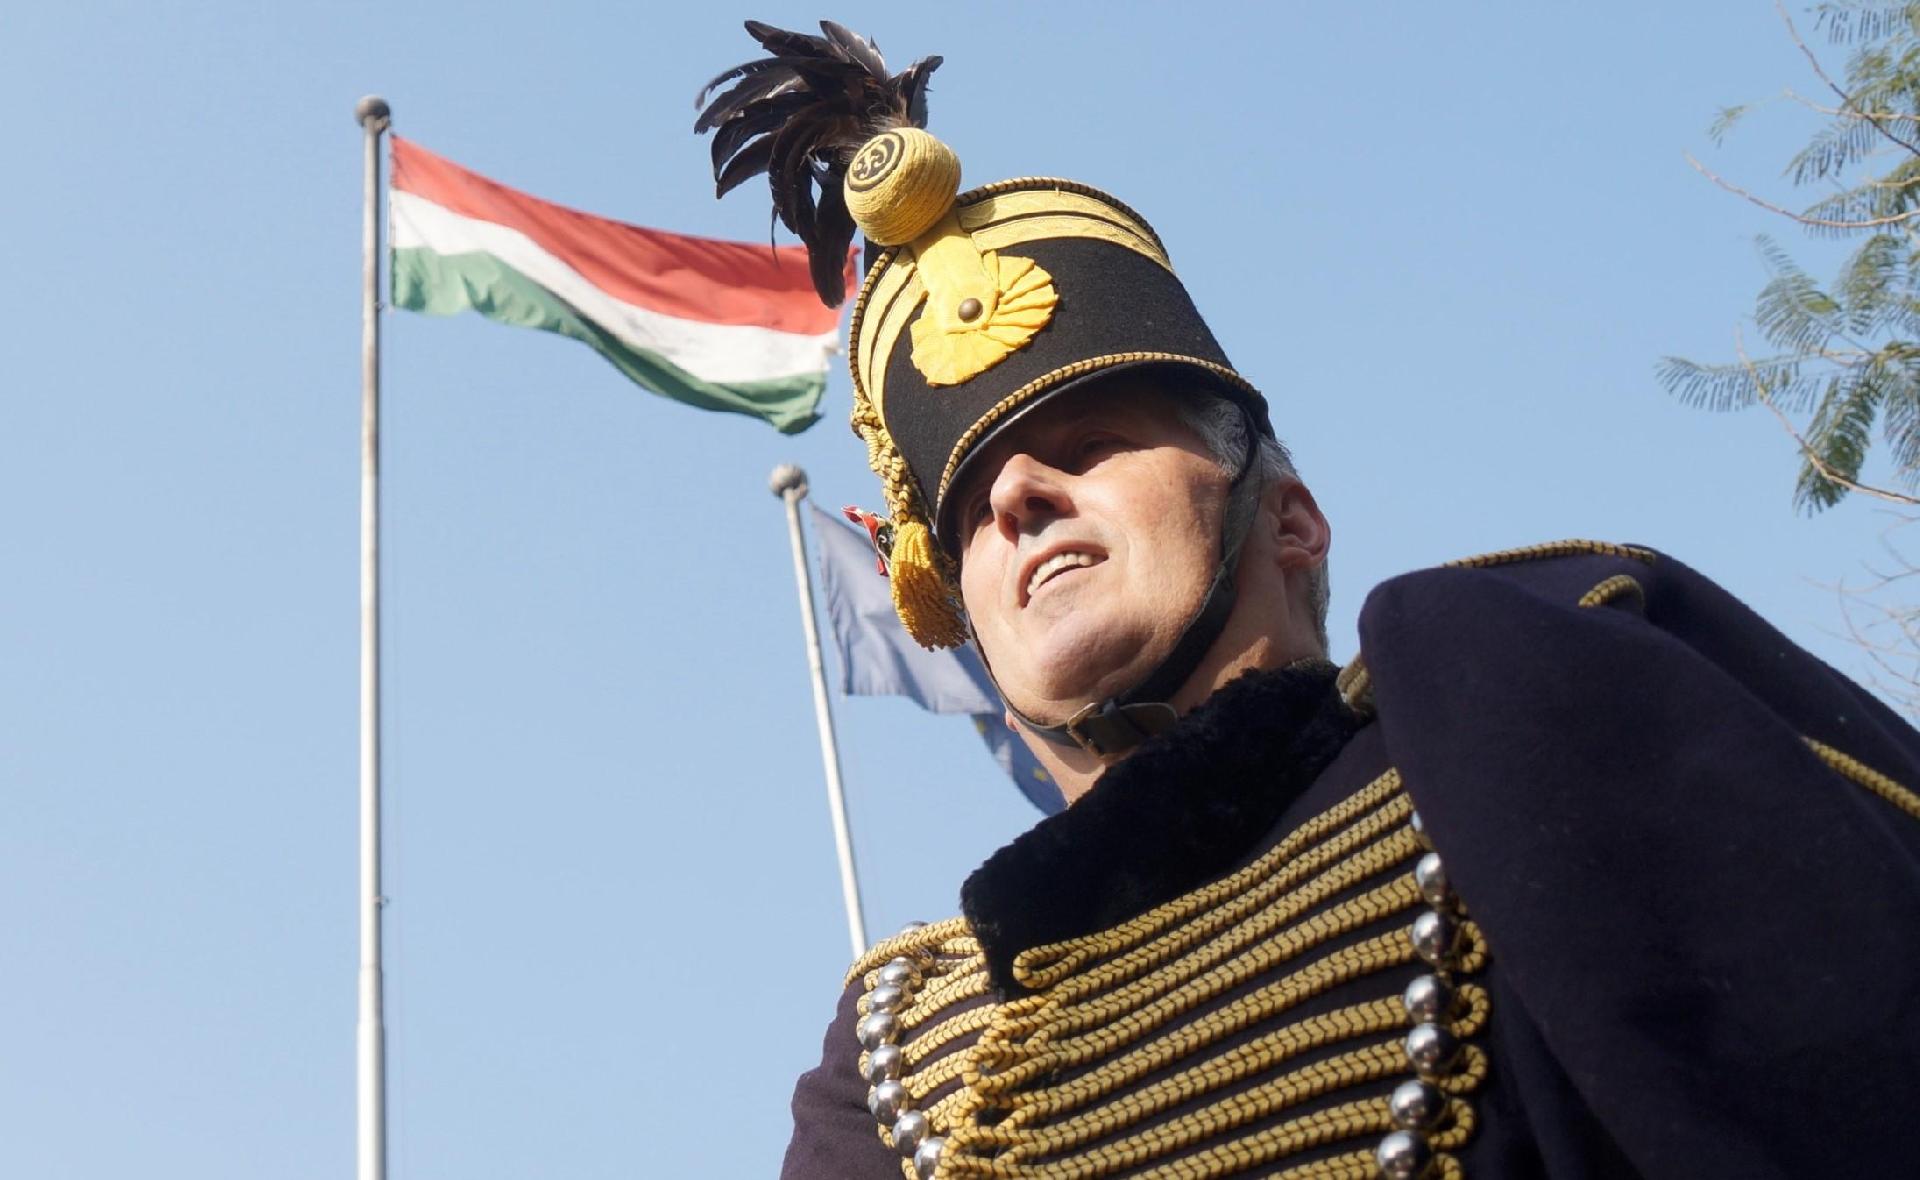 Hungarian Hussar in Delhi